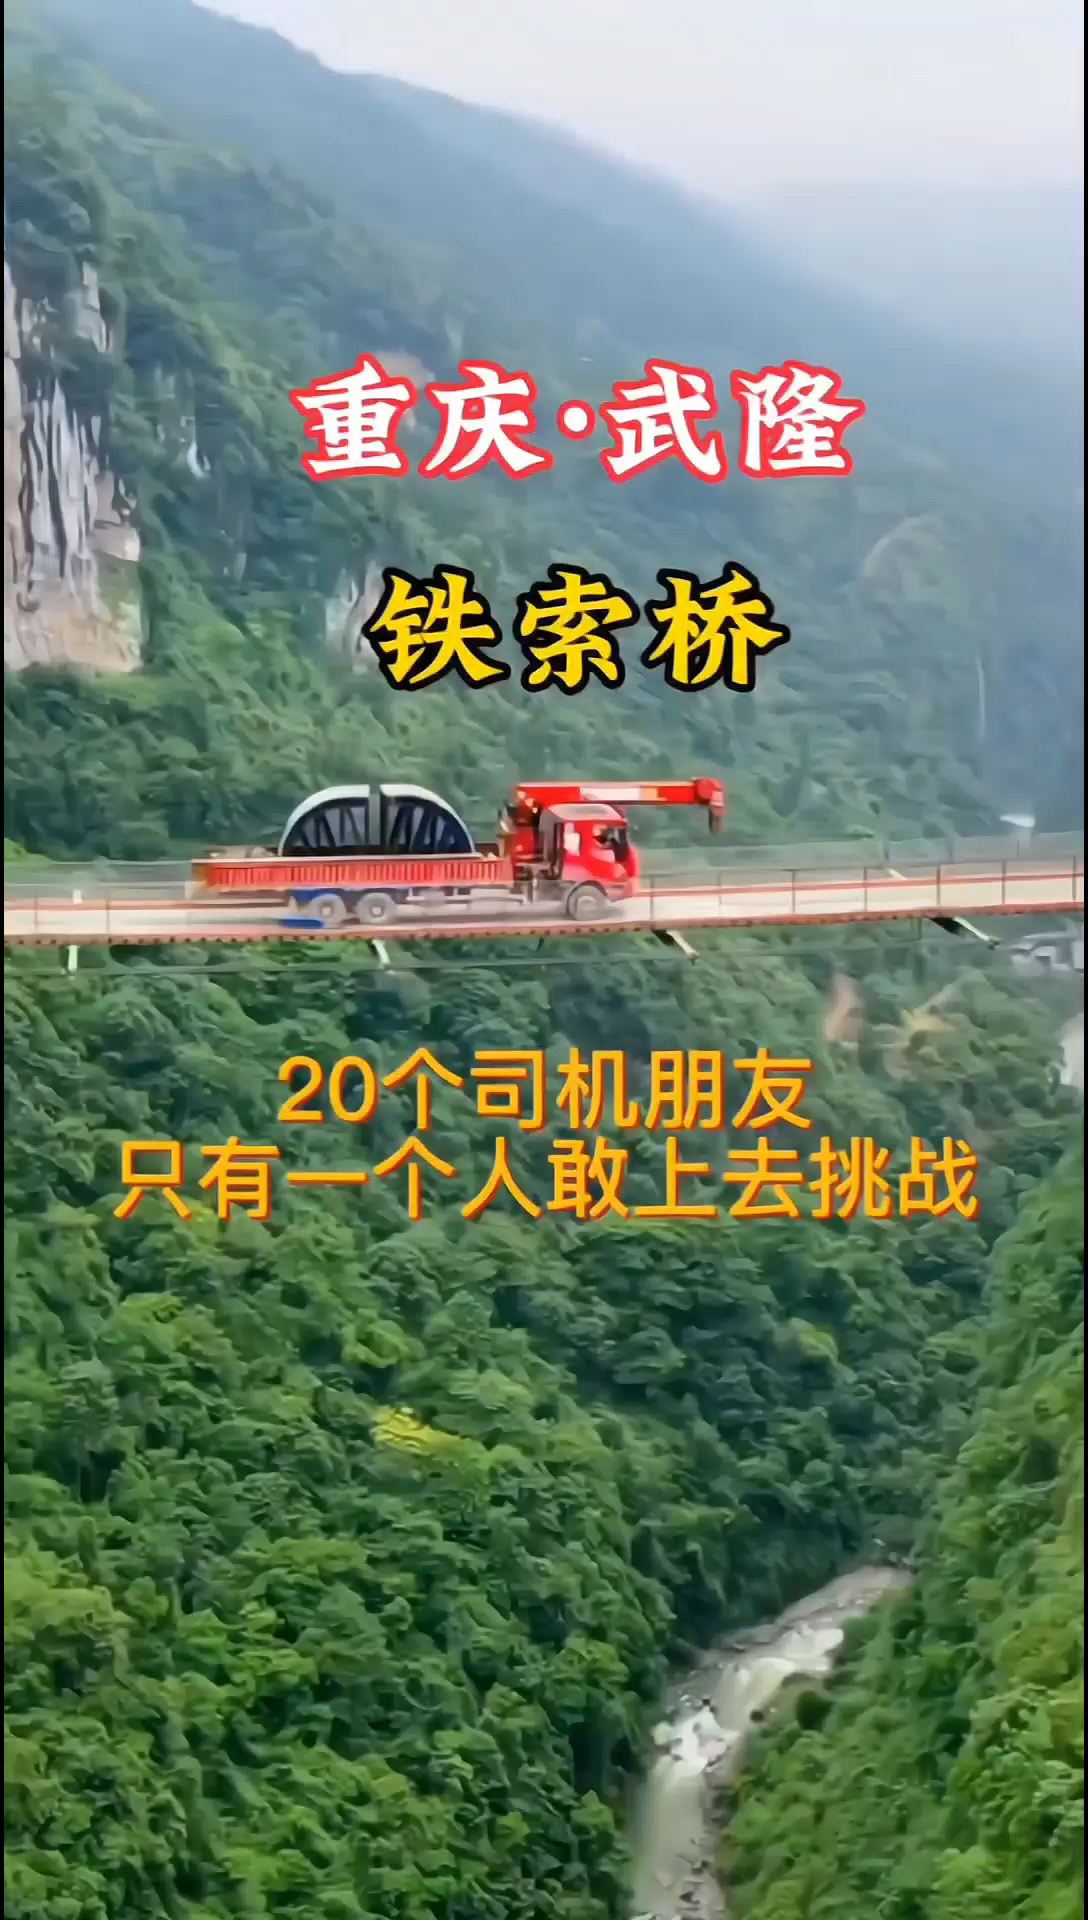 重庆 武隆 铁索桥 20个司机朋友只有一个人敢上去挑战